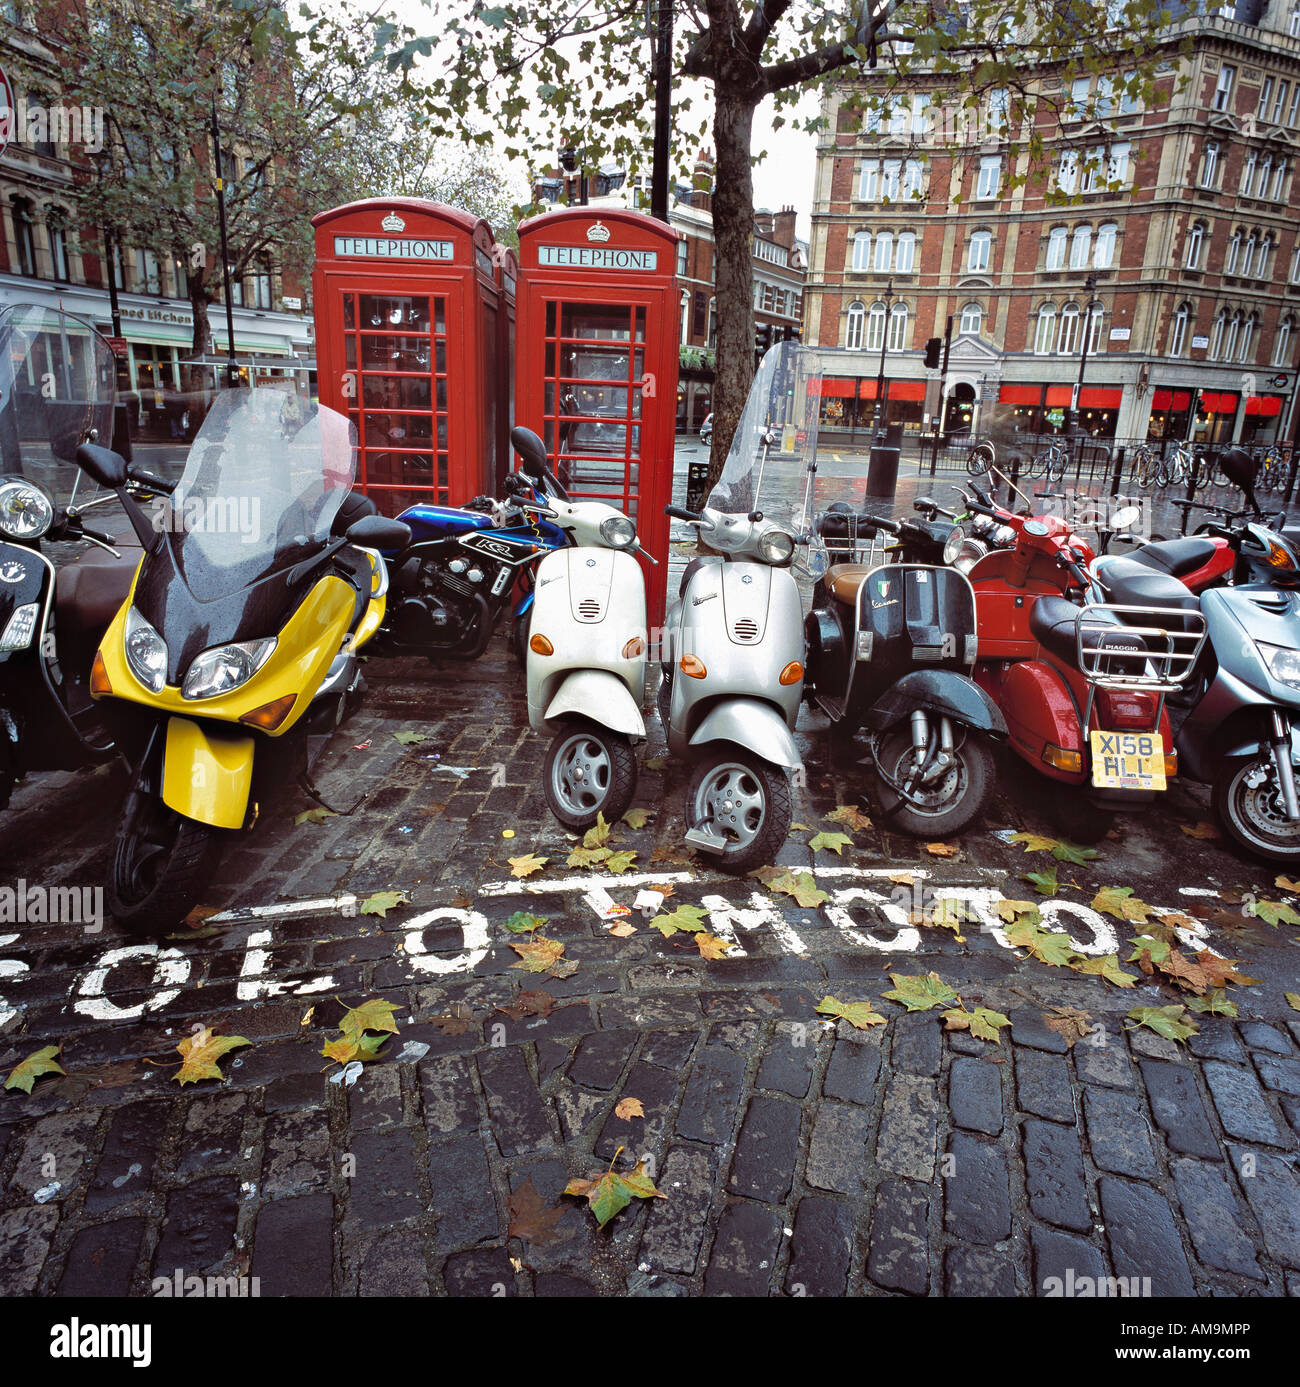 Motos et scooters en stationnement par les cabines téléphoniques à Londres. Banque D'Images